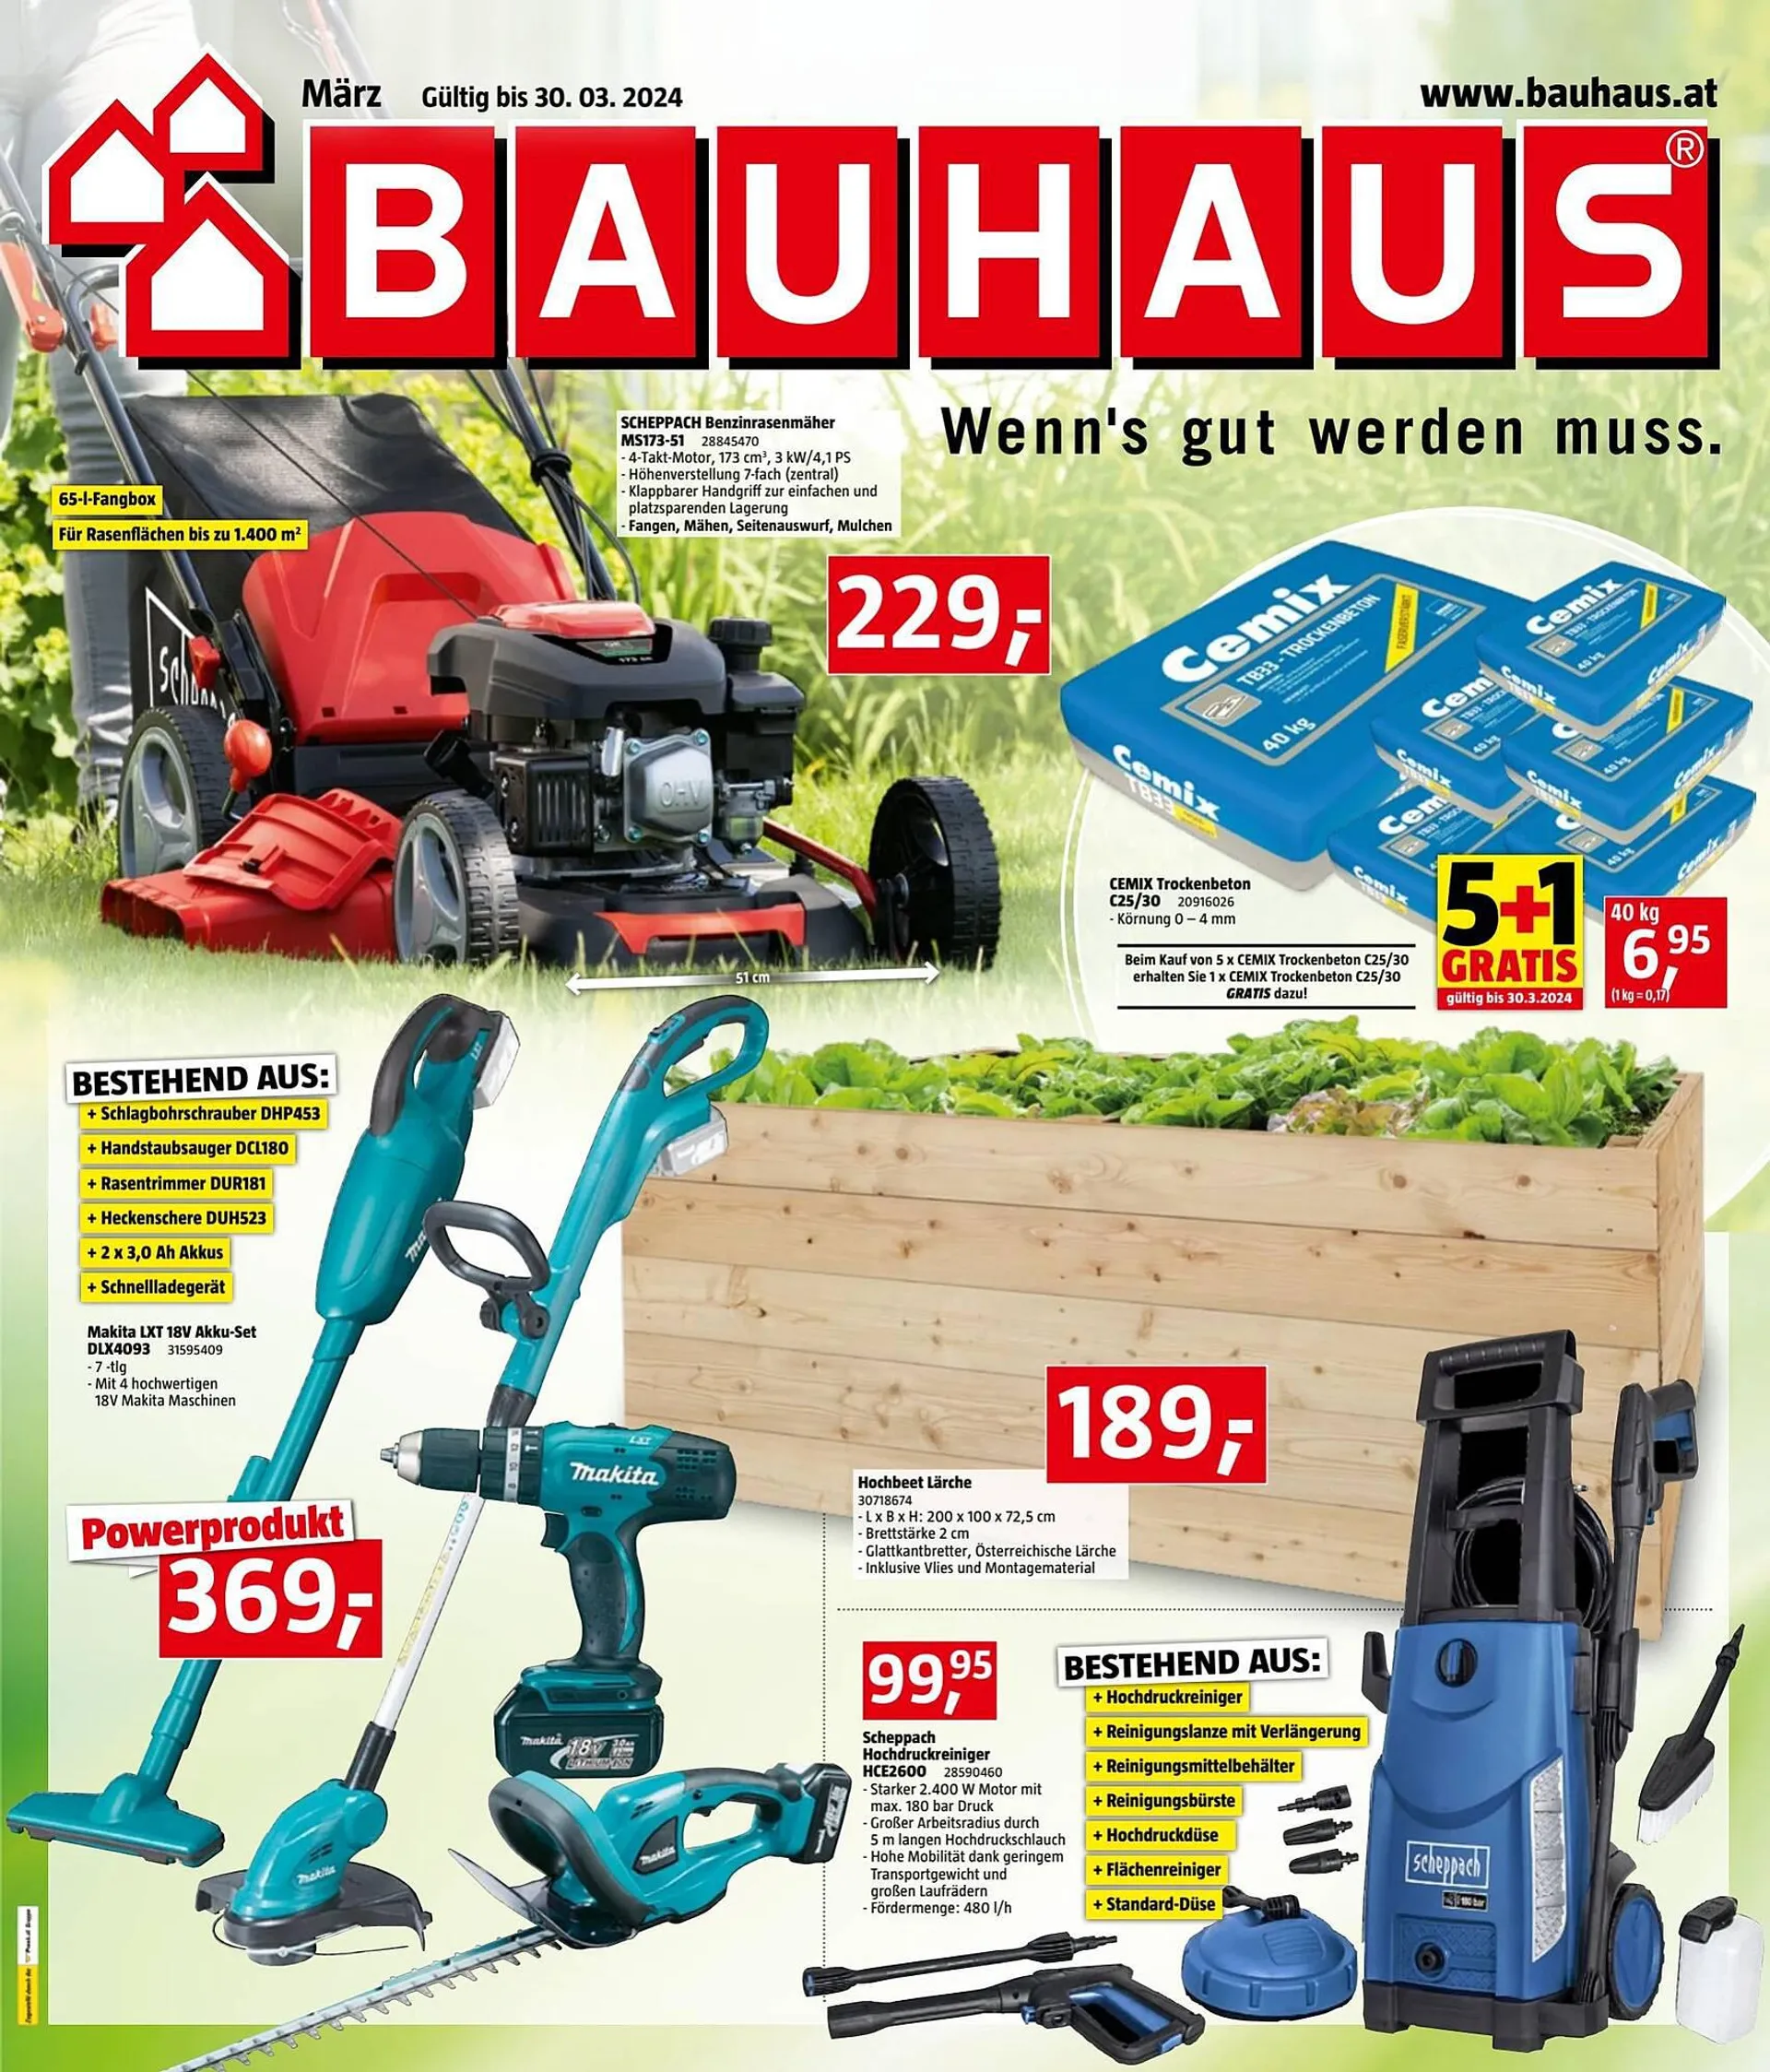 Bauhaus Flugblatt von 29. Februar bis 30. März 2024 - Flugblätt seite  